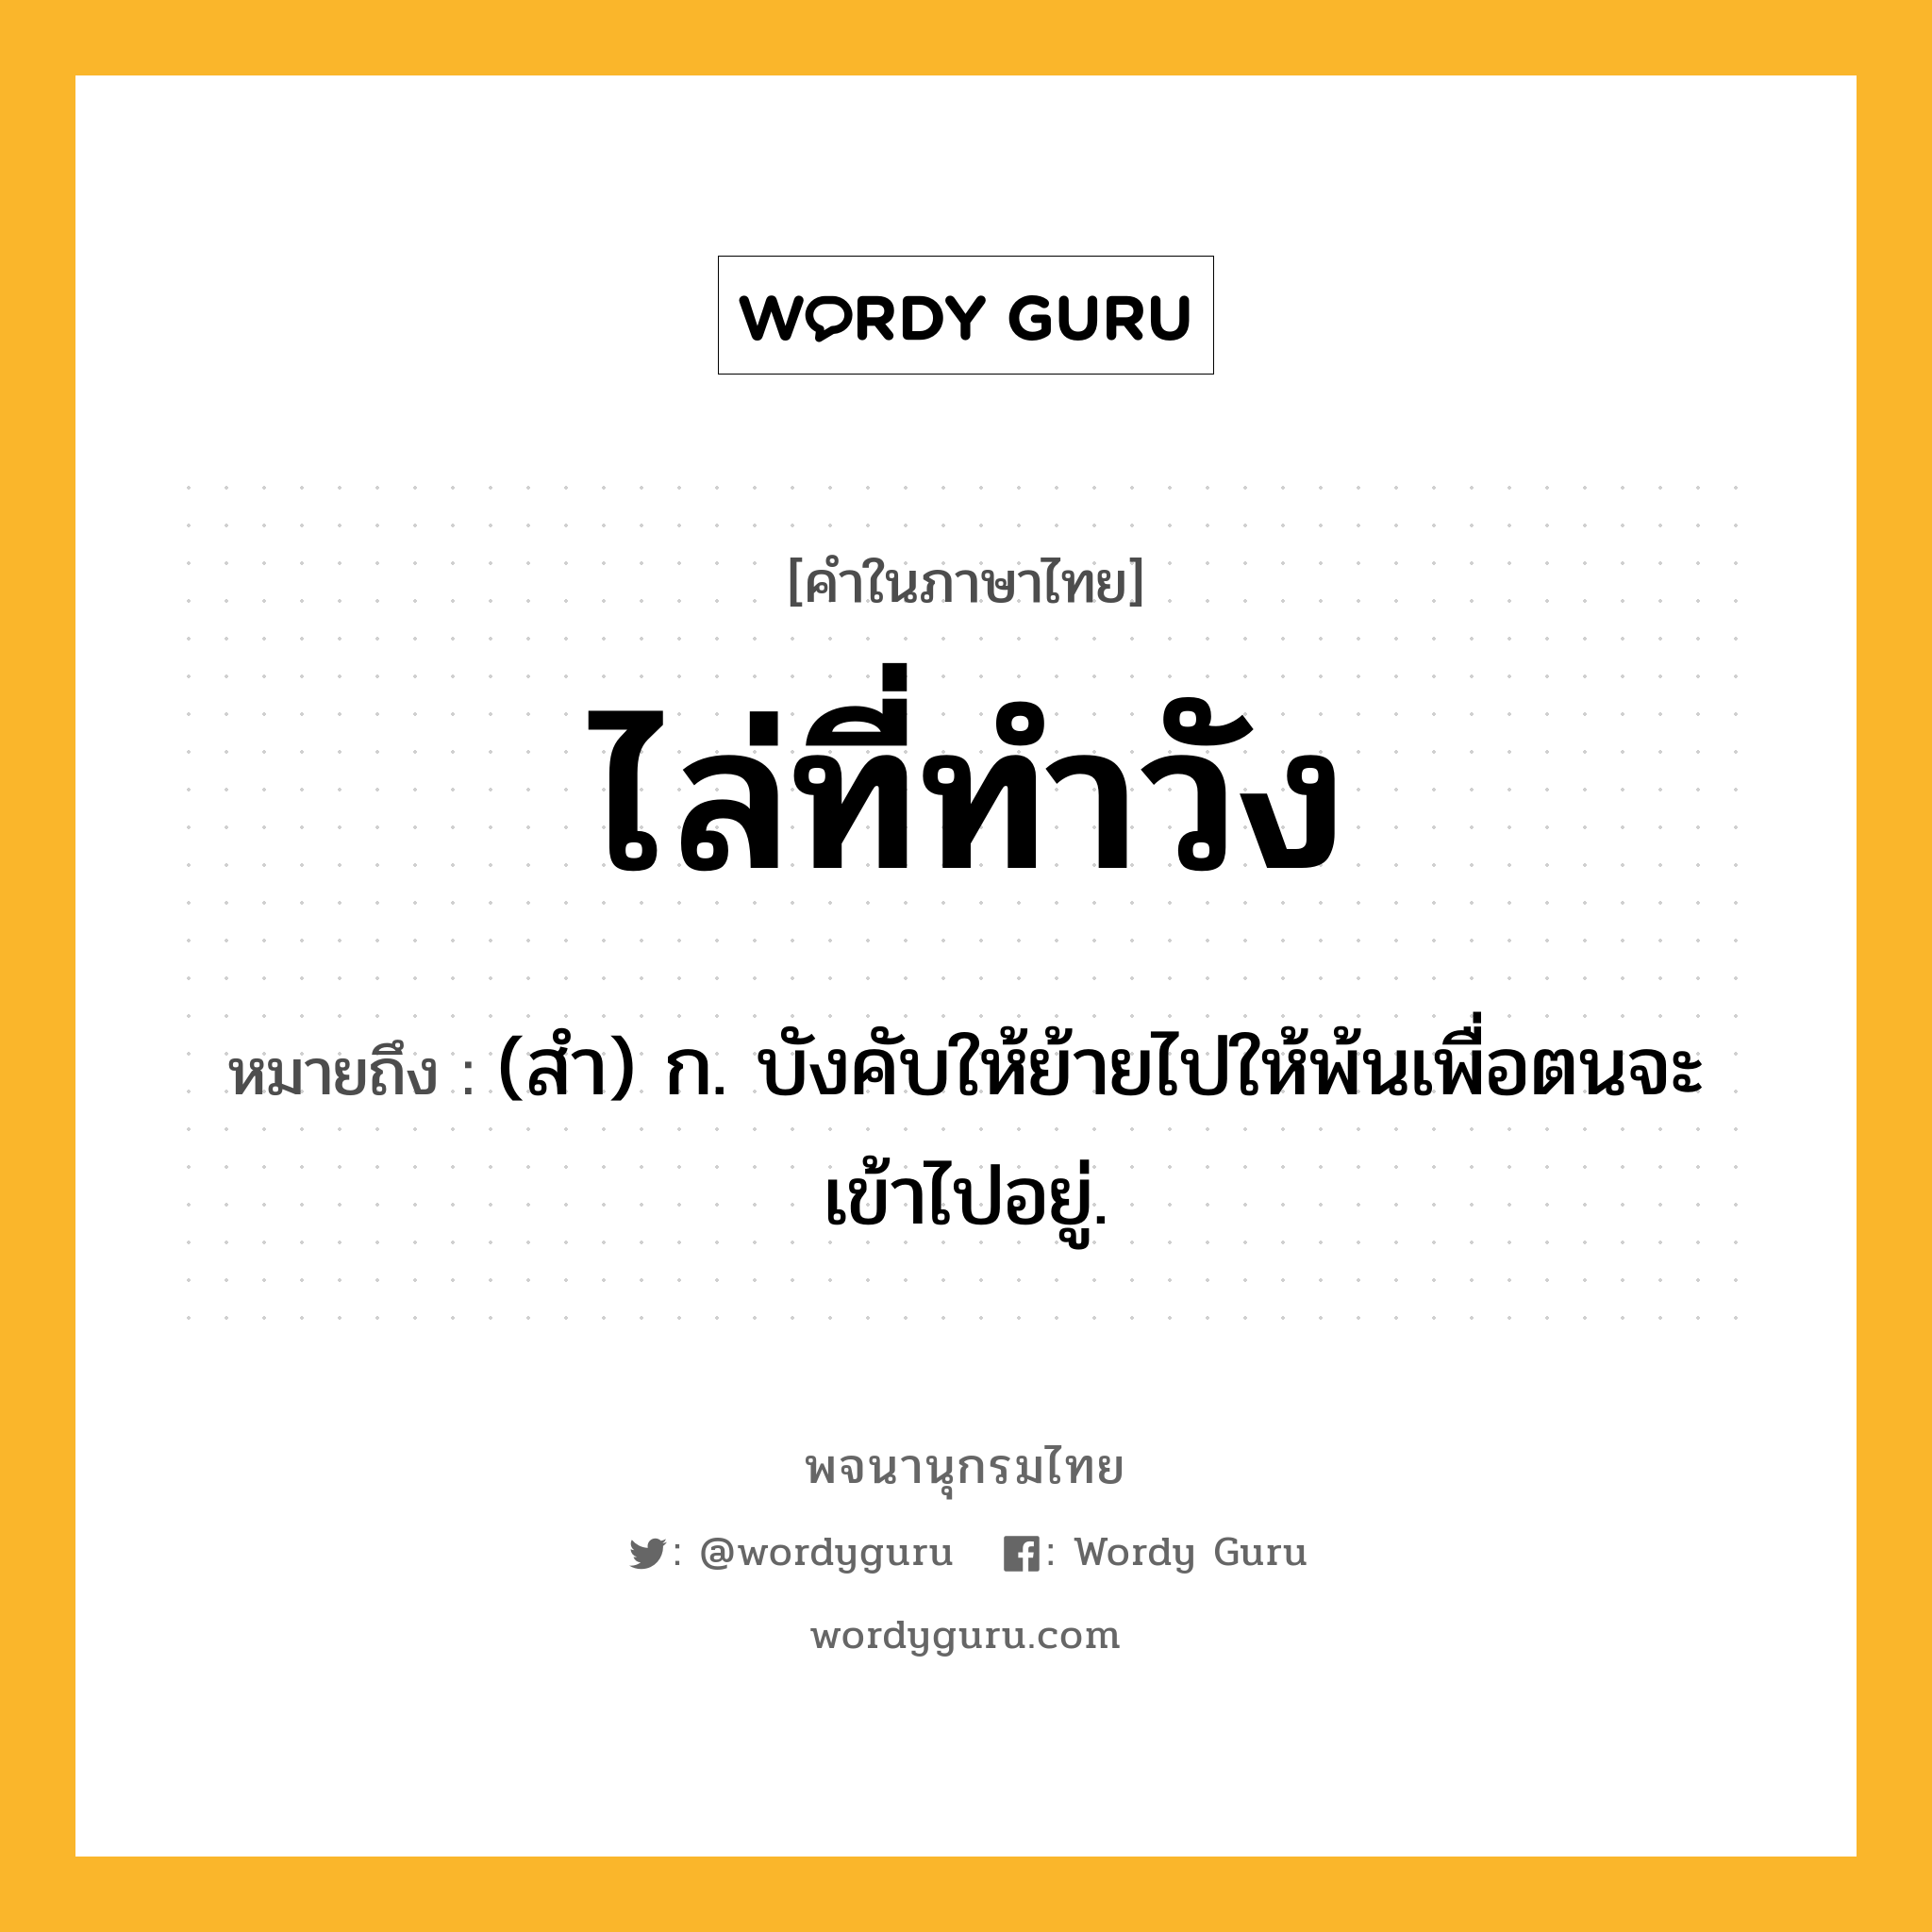 ไล่ที่ทำวัง ความหมาย หมายถึงอะไร?, คำในภาษาไทย ไล่ที่ทำวัง หมายถึง (สํา) ก. บังคับให้ย้ายไปให้พ้นเพื่อตนจะเข้าไปอยู่.